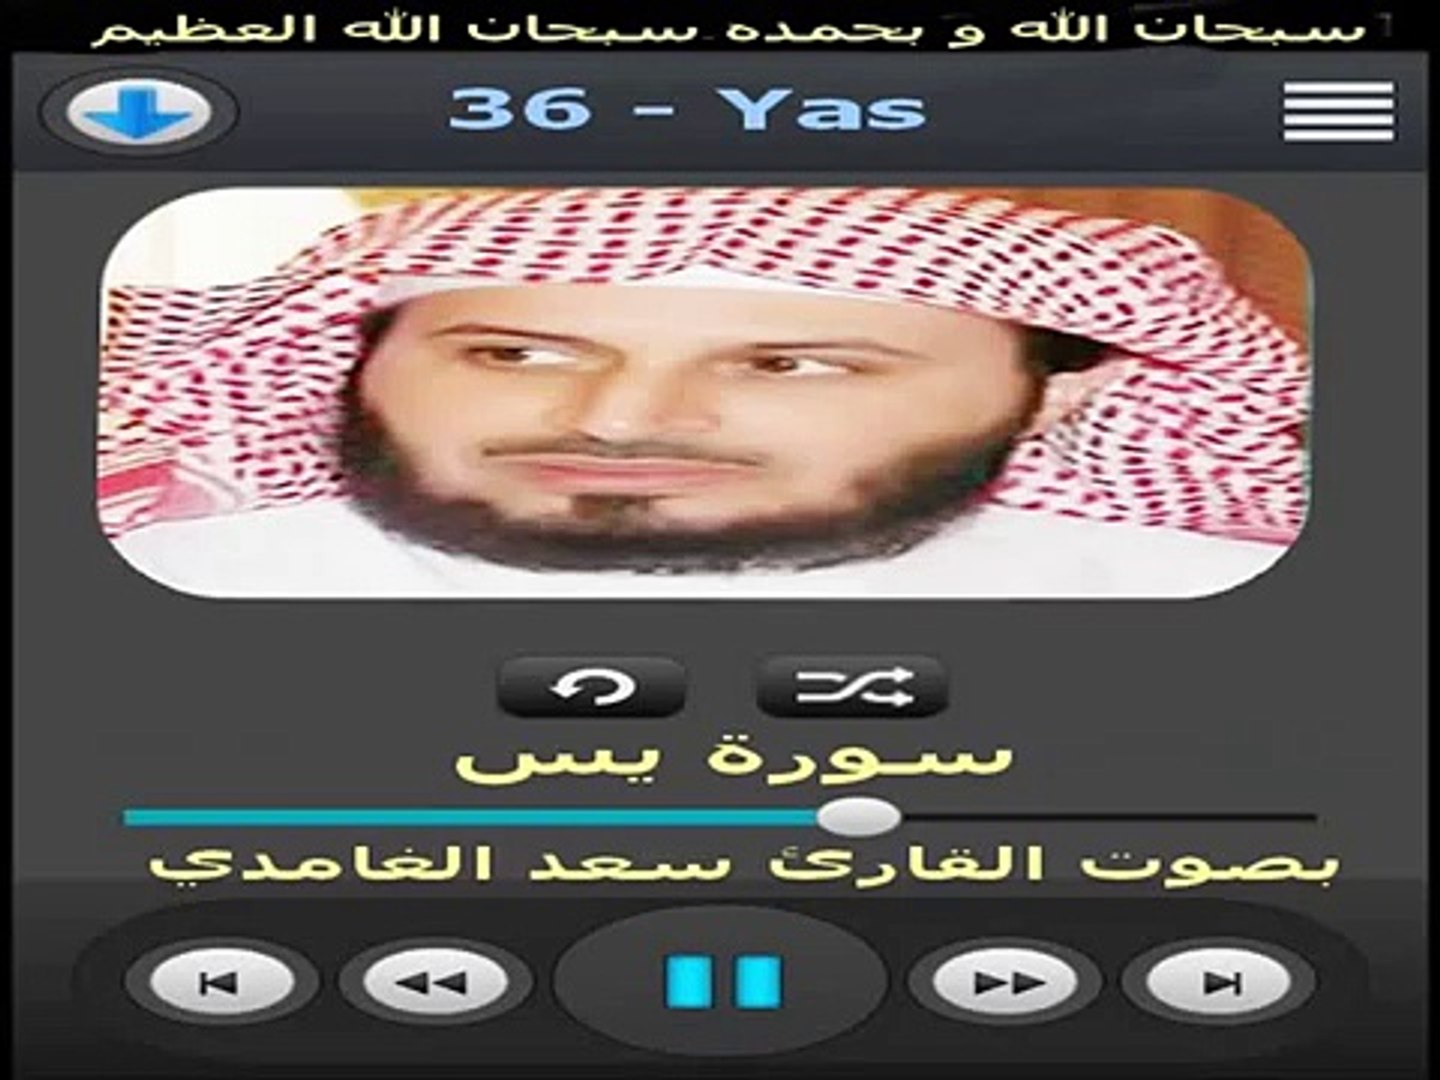 سورة يس القارئ سعد الغامدي - Surat Yassine Saad el ghamdi - فيديو  Dailymotion